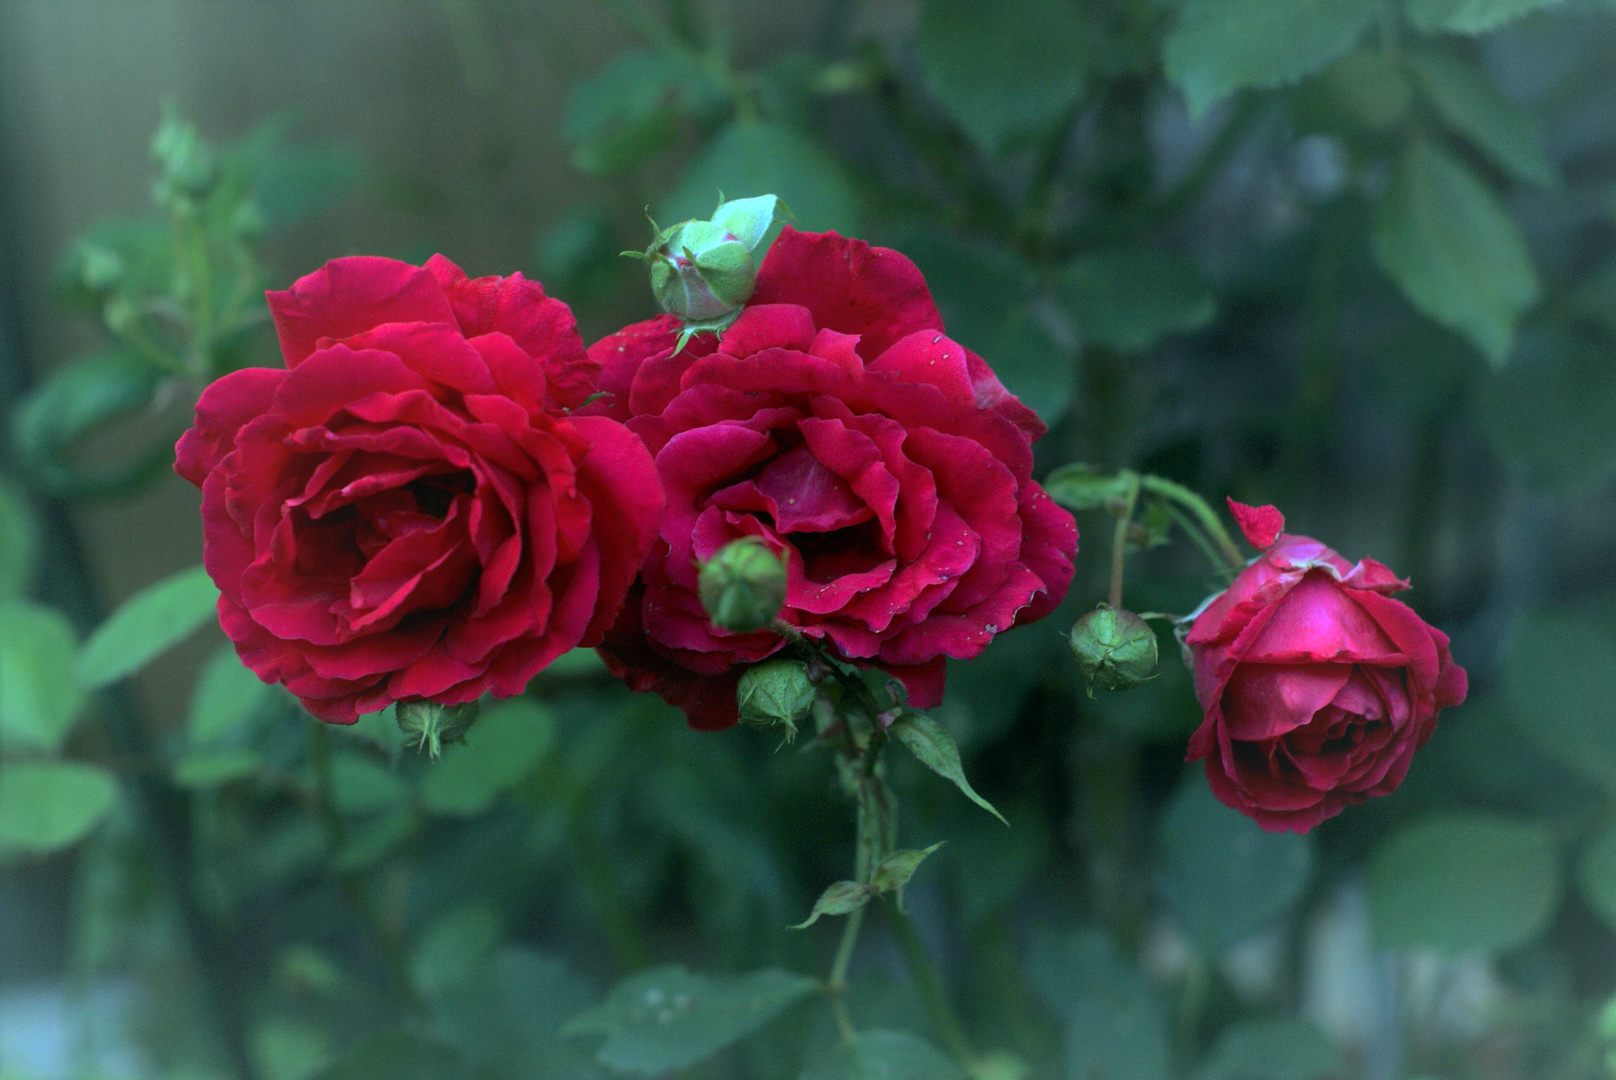 Die rote Rose